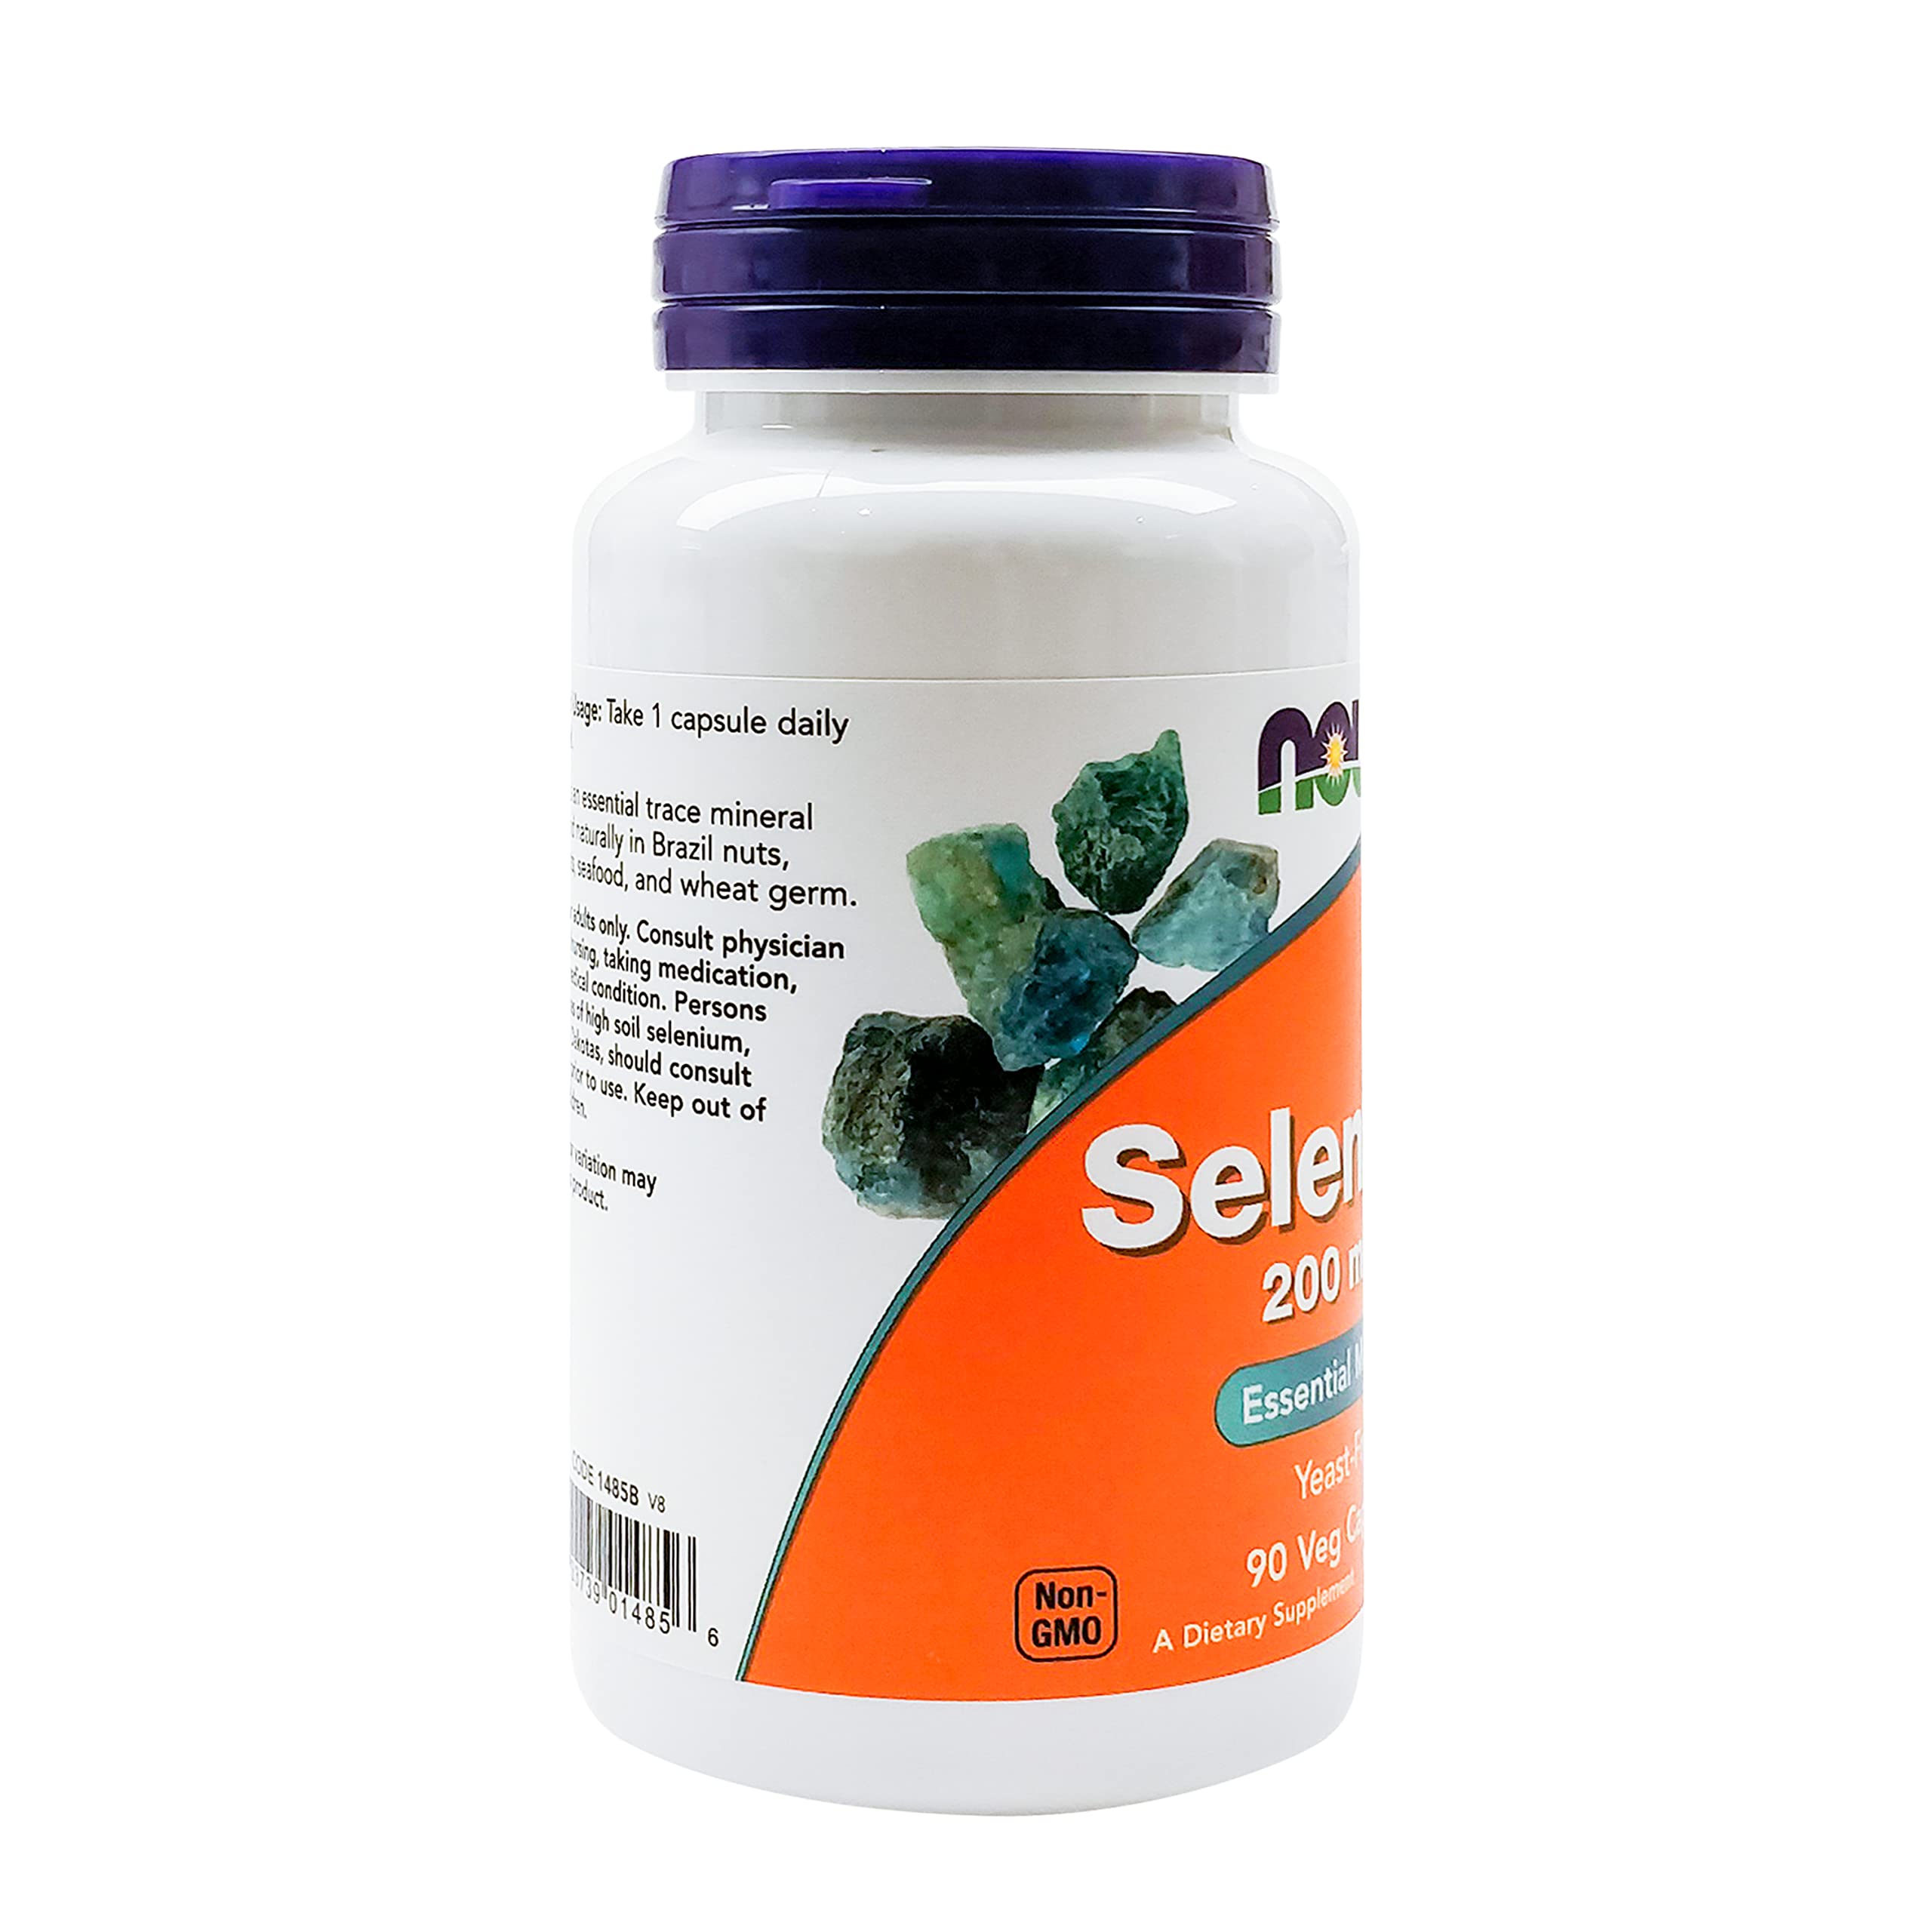 NOW Supplements, Selenium (L-Selenomethionine) 200 mcg, Essential Mineral*, 90 Veg Capsules (Pack of 2)